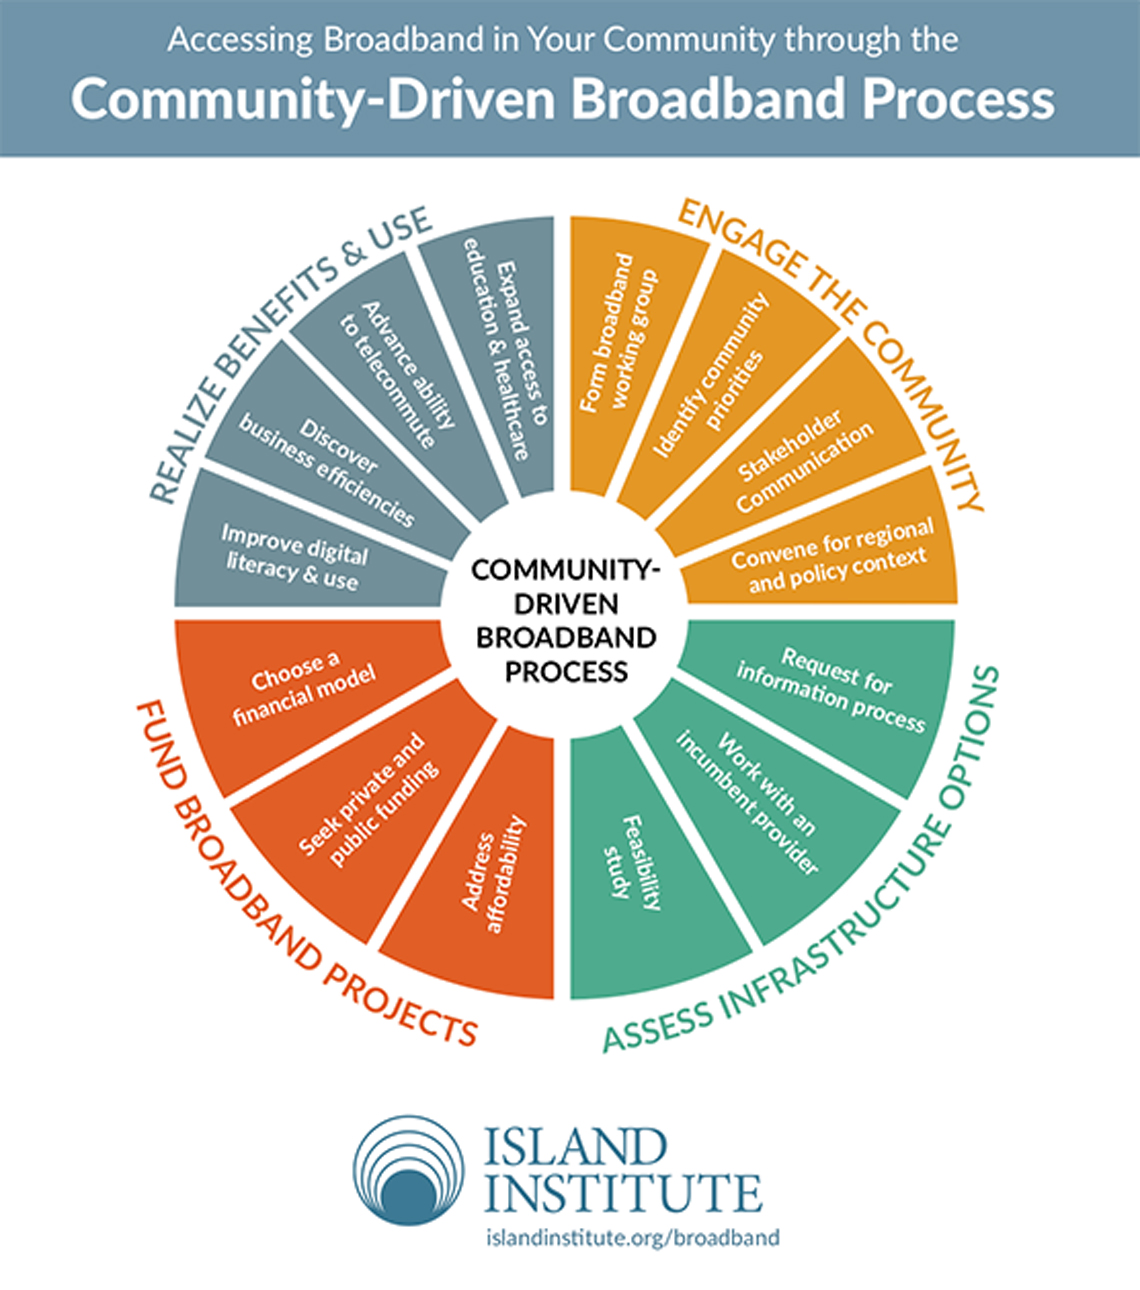 Community-Driven Broadband Process chart